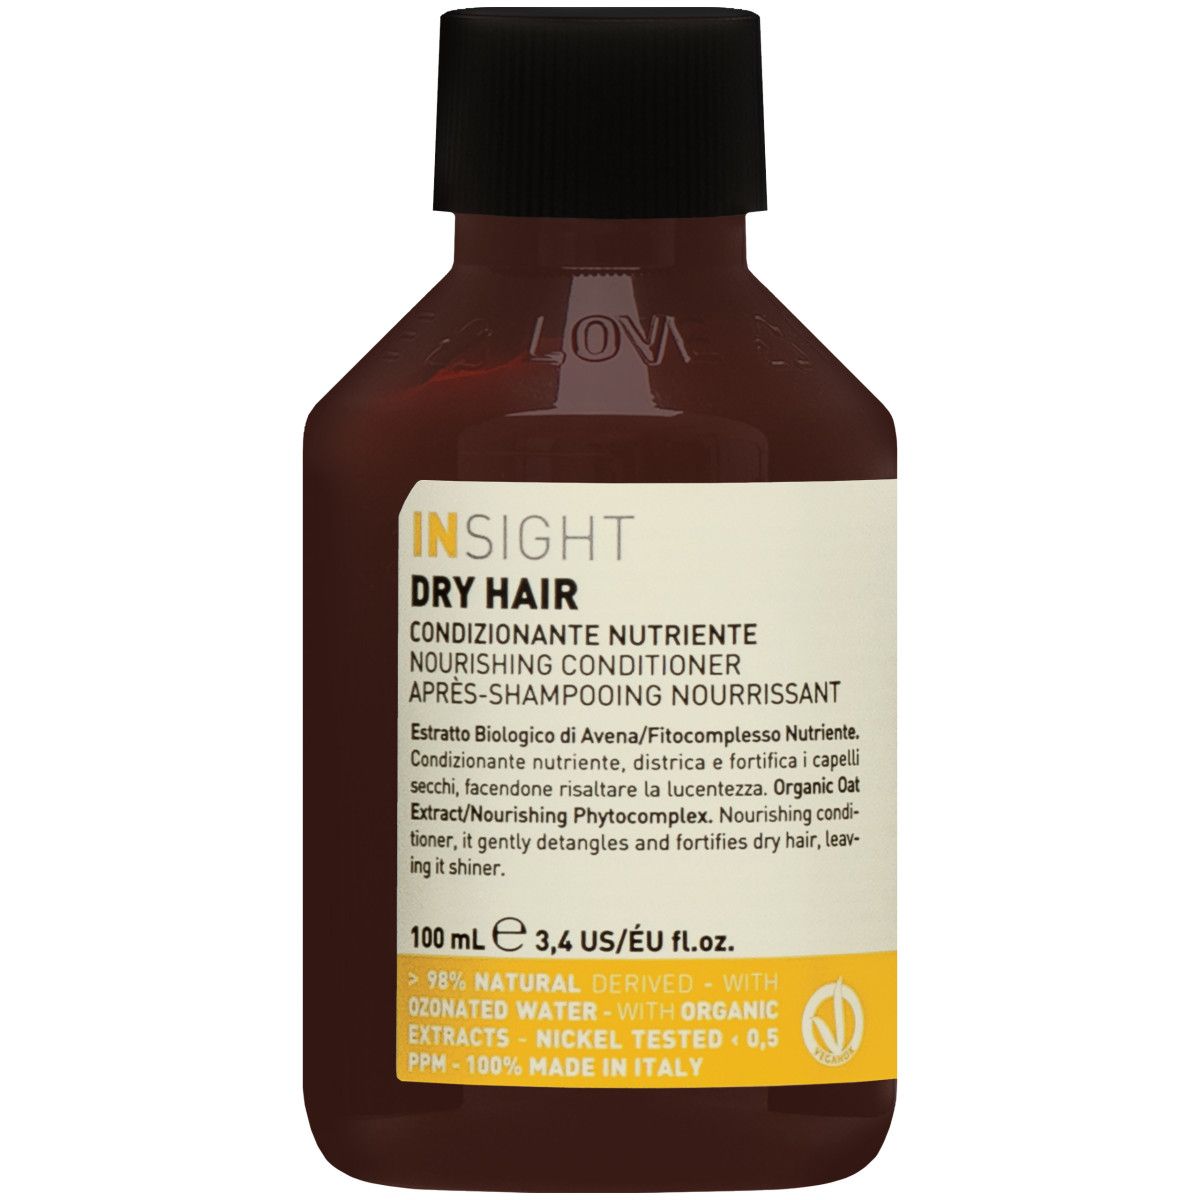 insight dry hair odżywka do włosów suchych